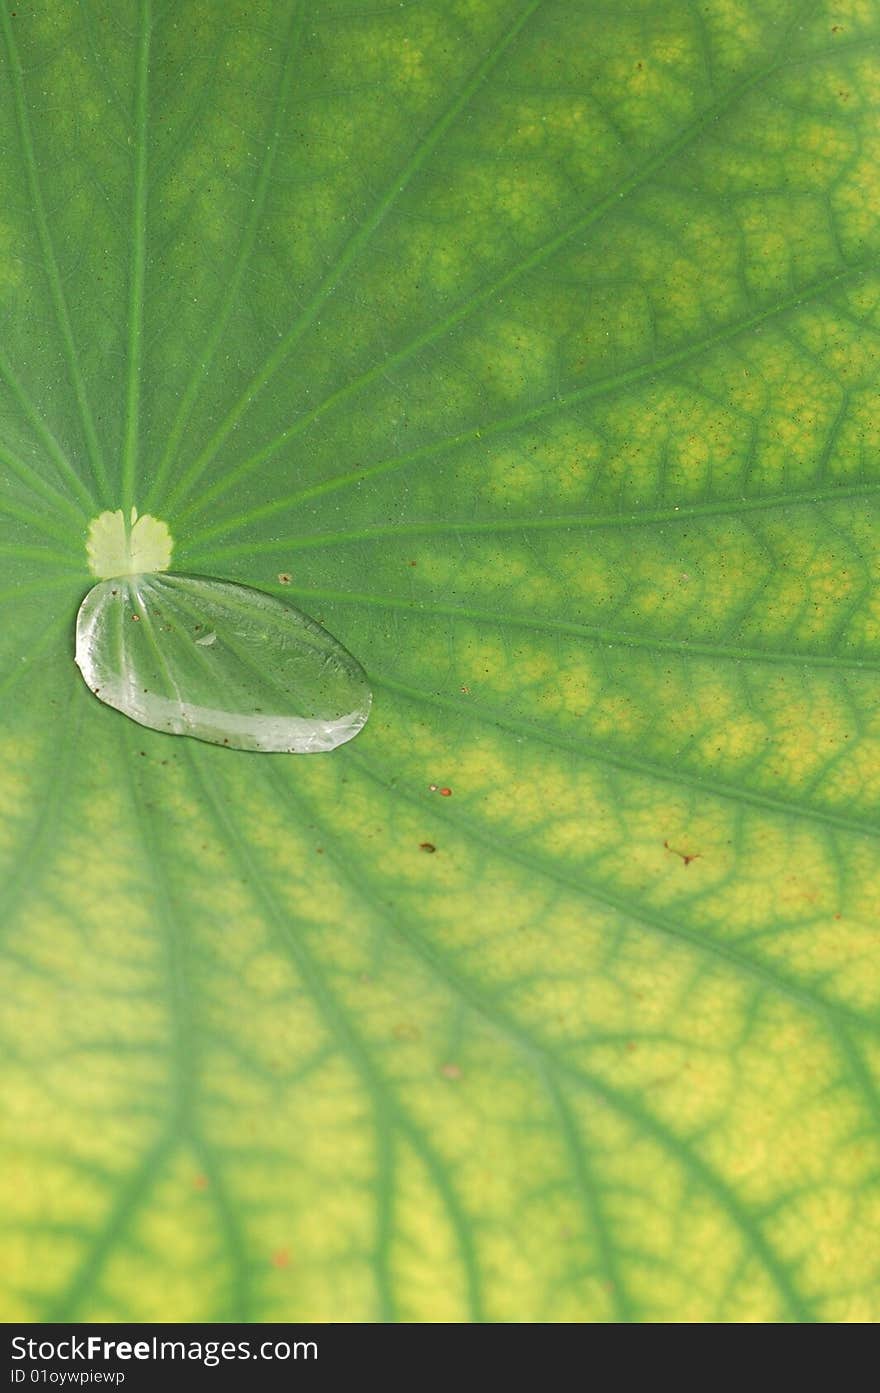 Waterdrop on green lotus leaf. Waterdrop on green lotus leaf